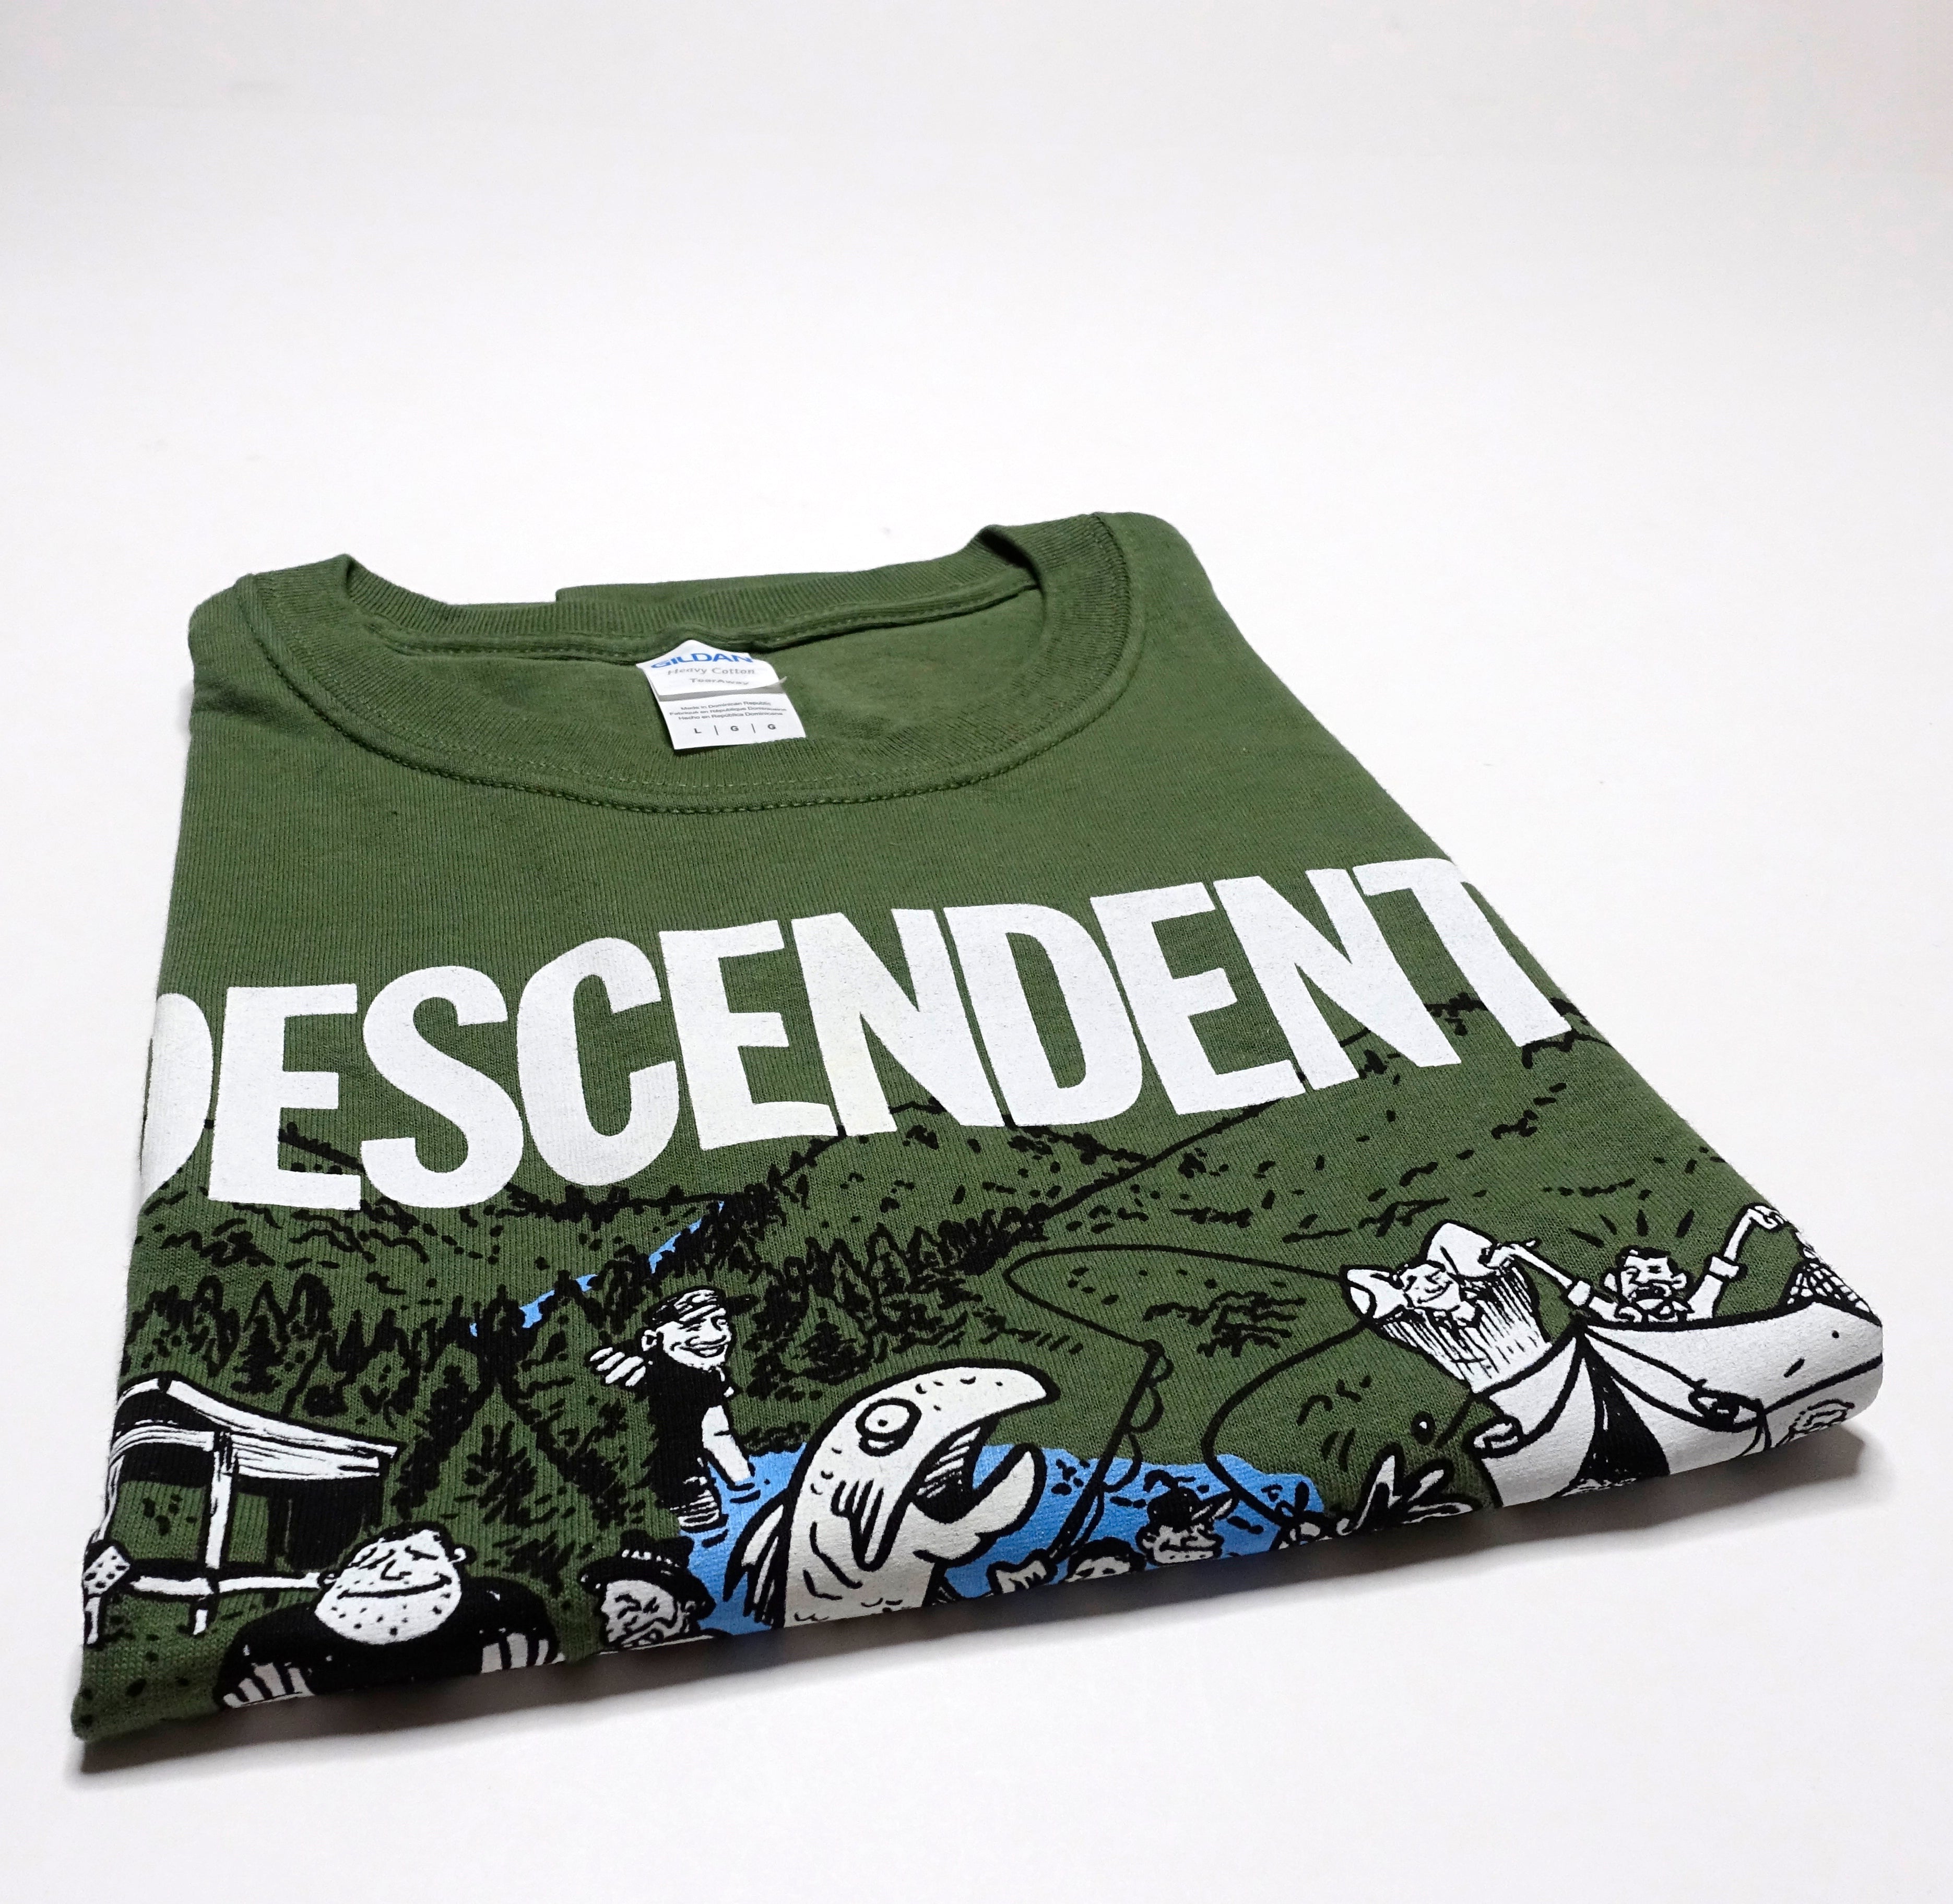 Descendents - Mishawaka 2018 Tour Shirt Size Large